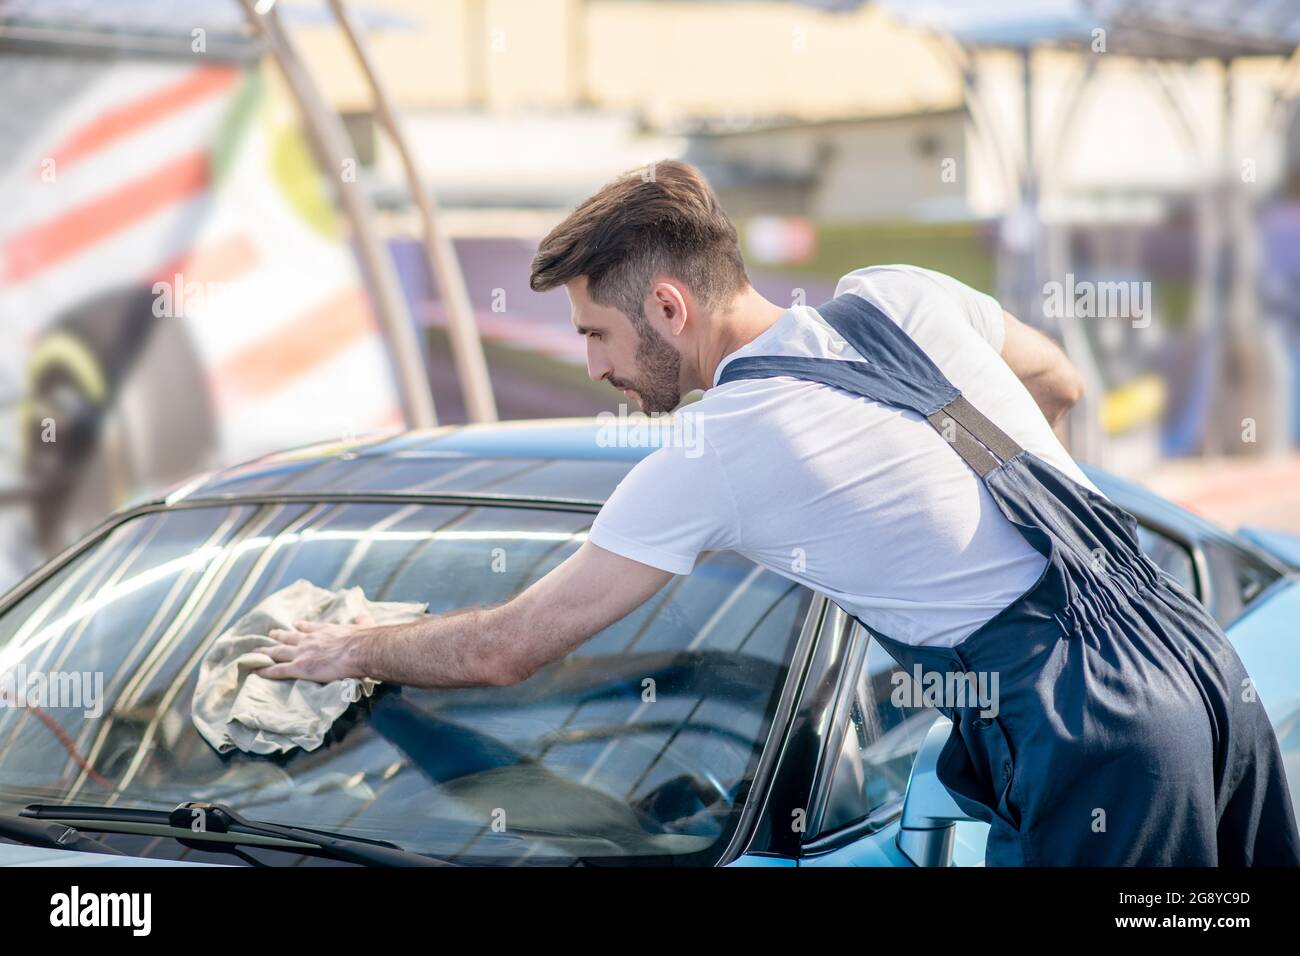 Homme dans une chemise et une combinaison essuyant le verre propre de la voiture Banque D'Images